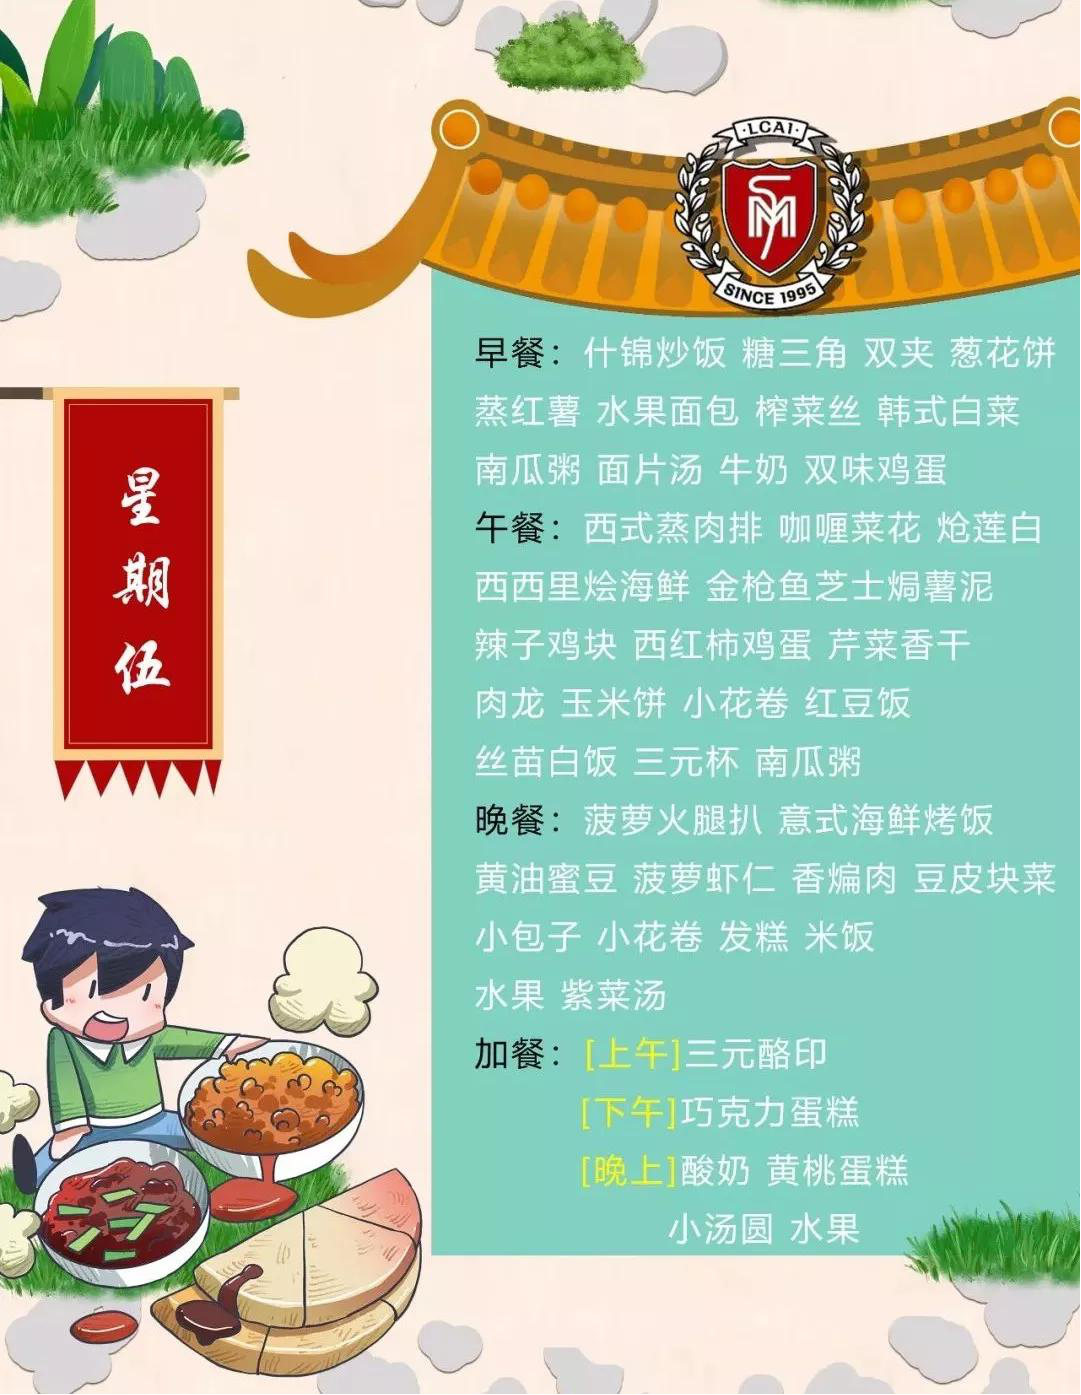 【力迈】Weekly Menu  第十六周美味菜谱 (图6)